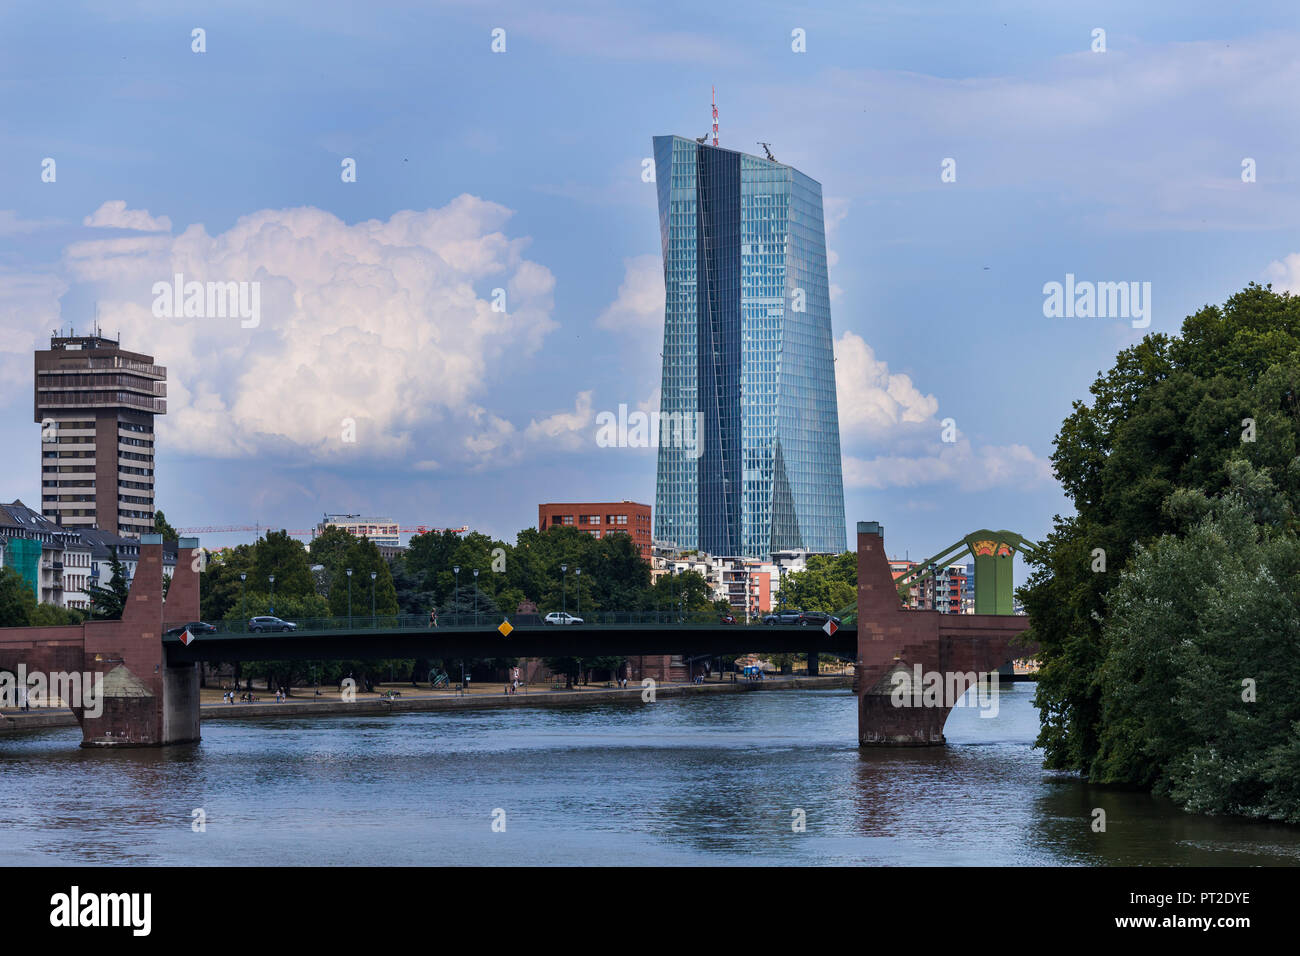 Germania, Francoforte, vista della Banca centrale europea con il vecchio ponte sul fiume principale in primo piano Foto Stock